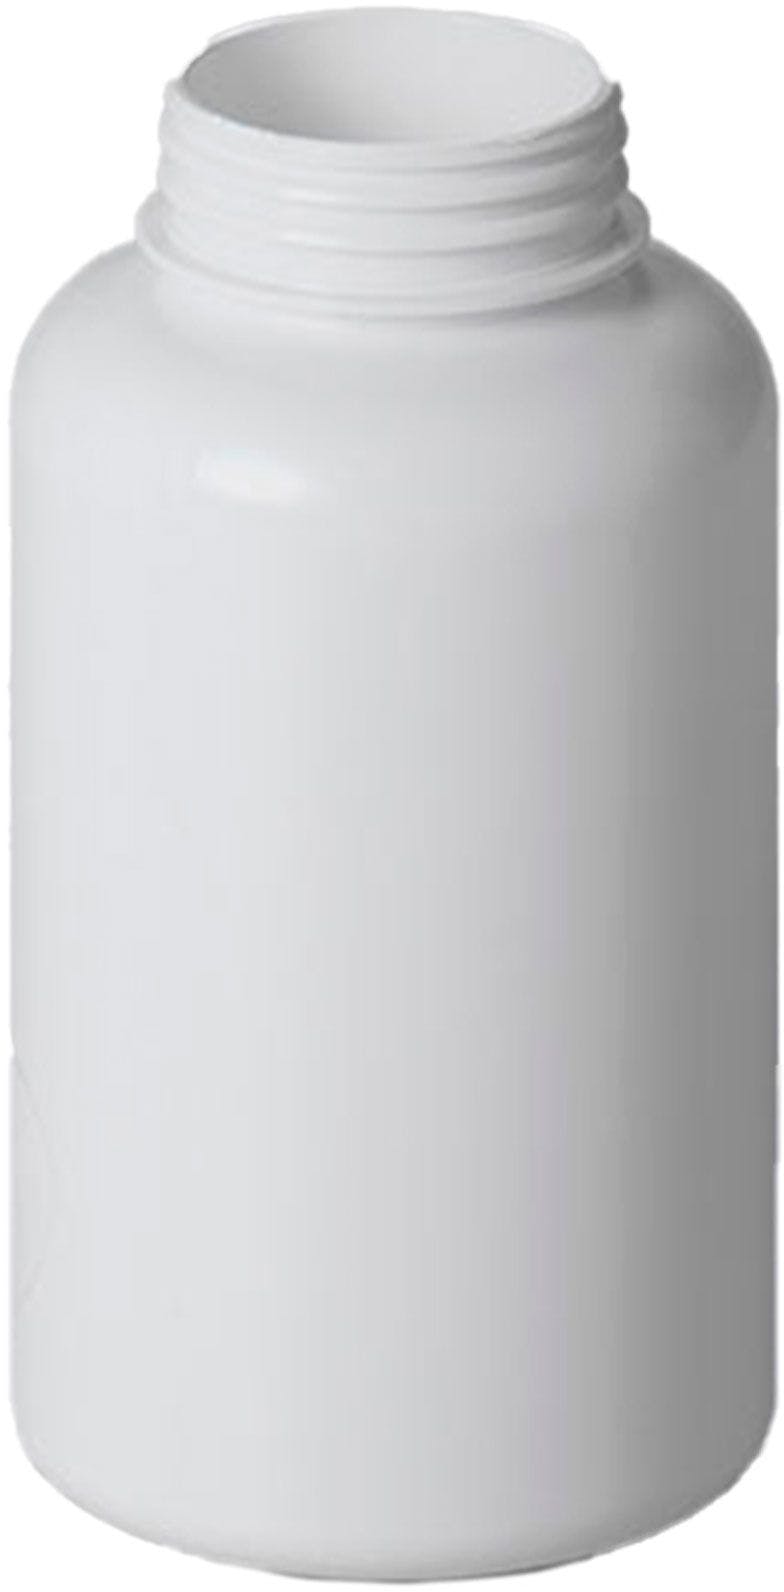 Jar PET 400 ml white Spices D45